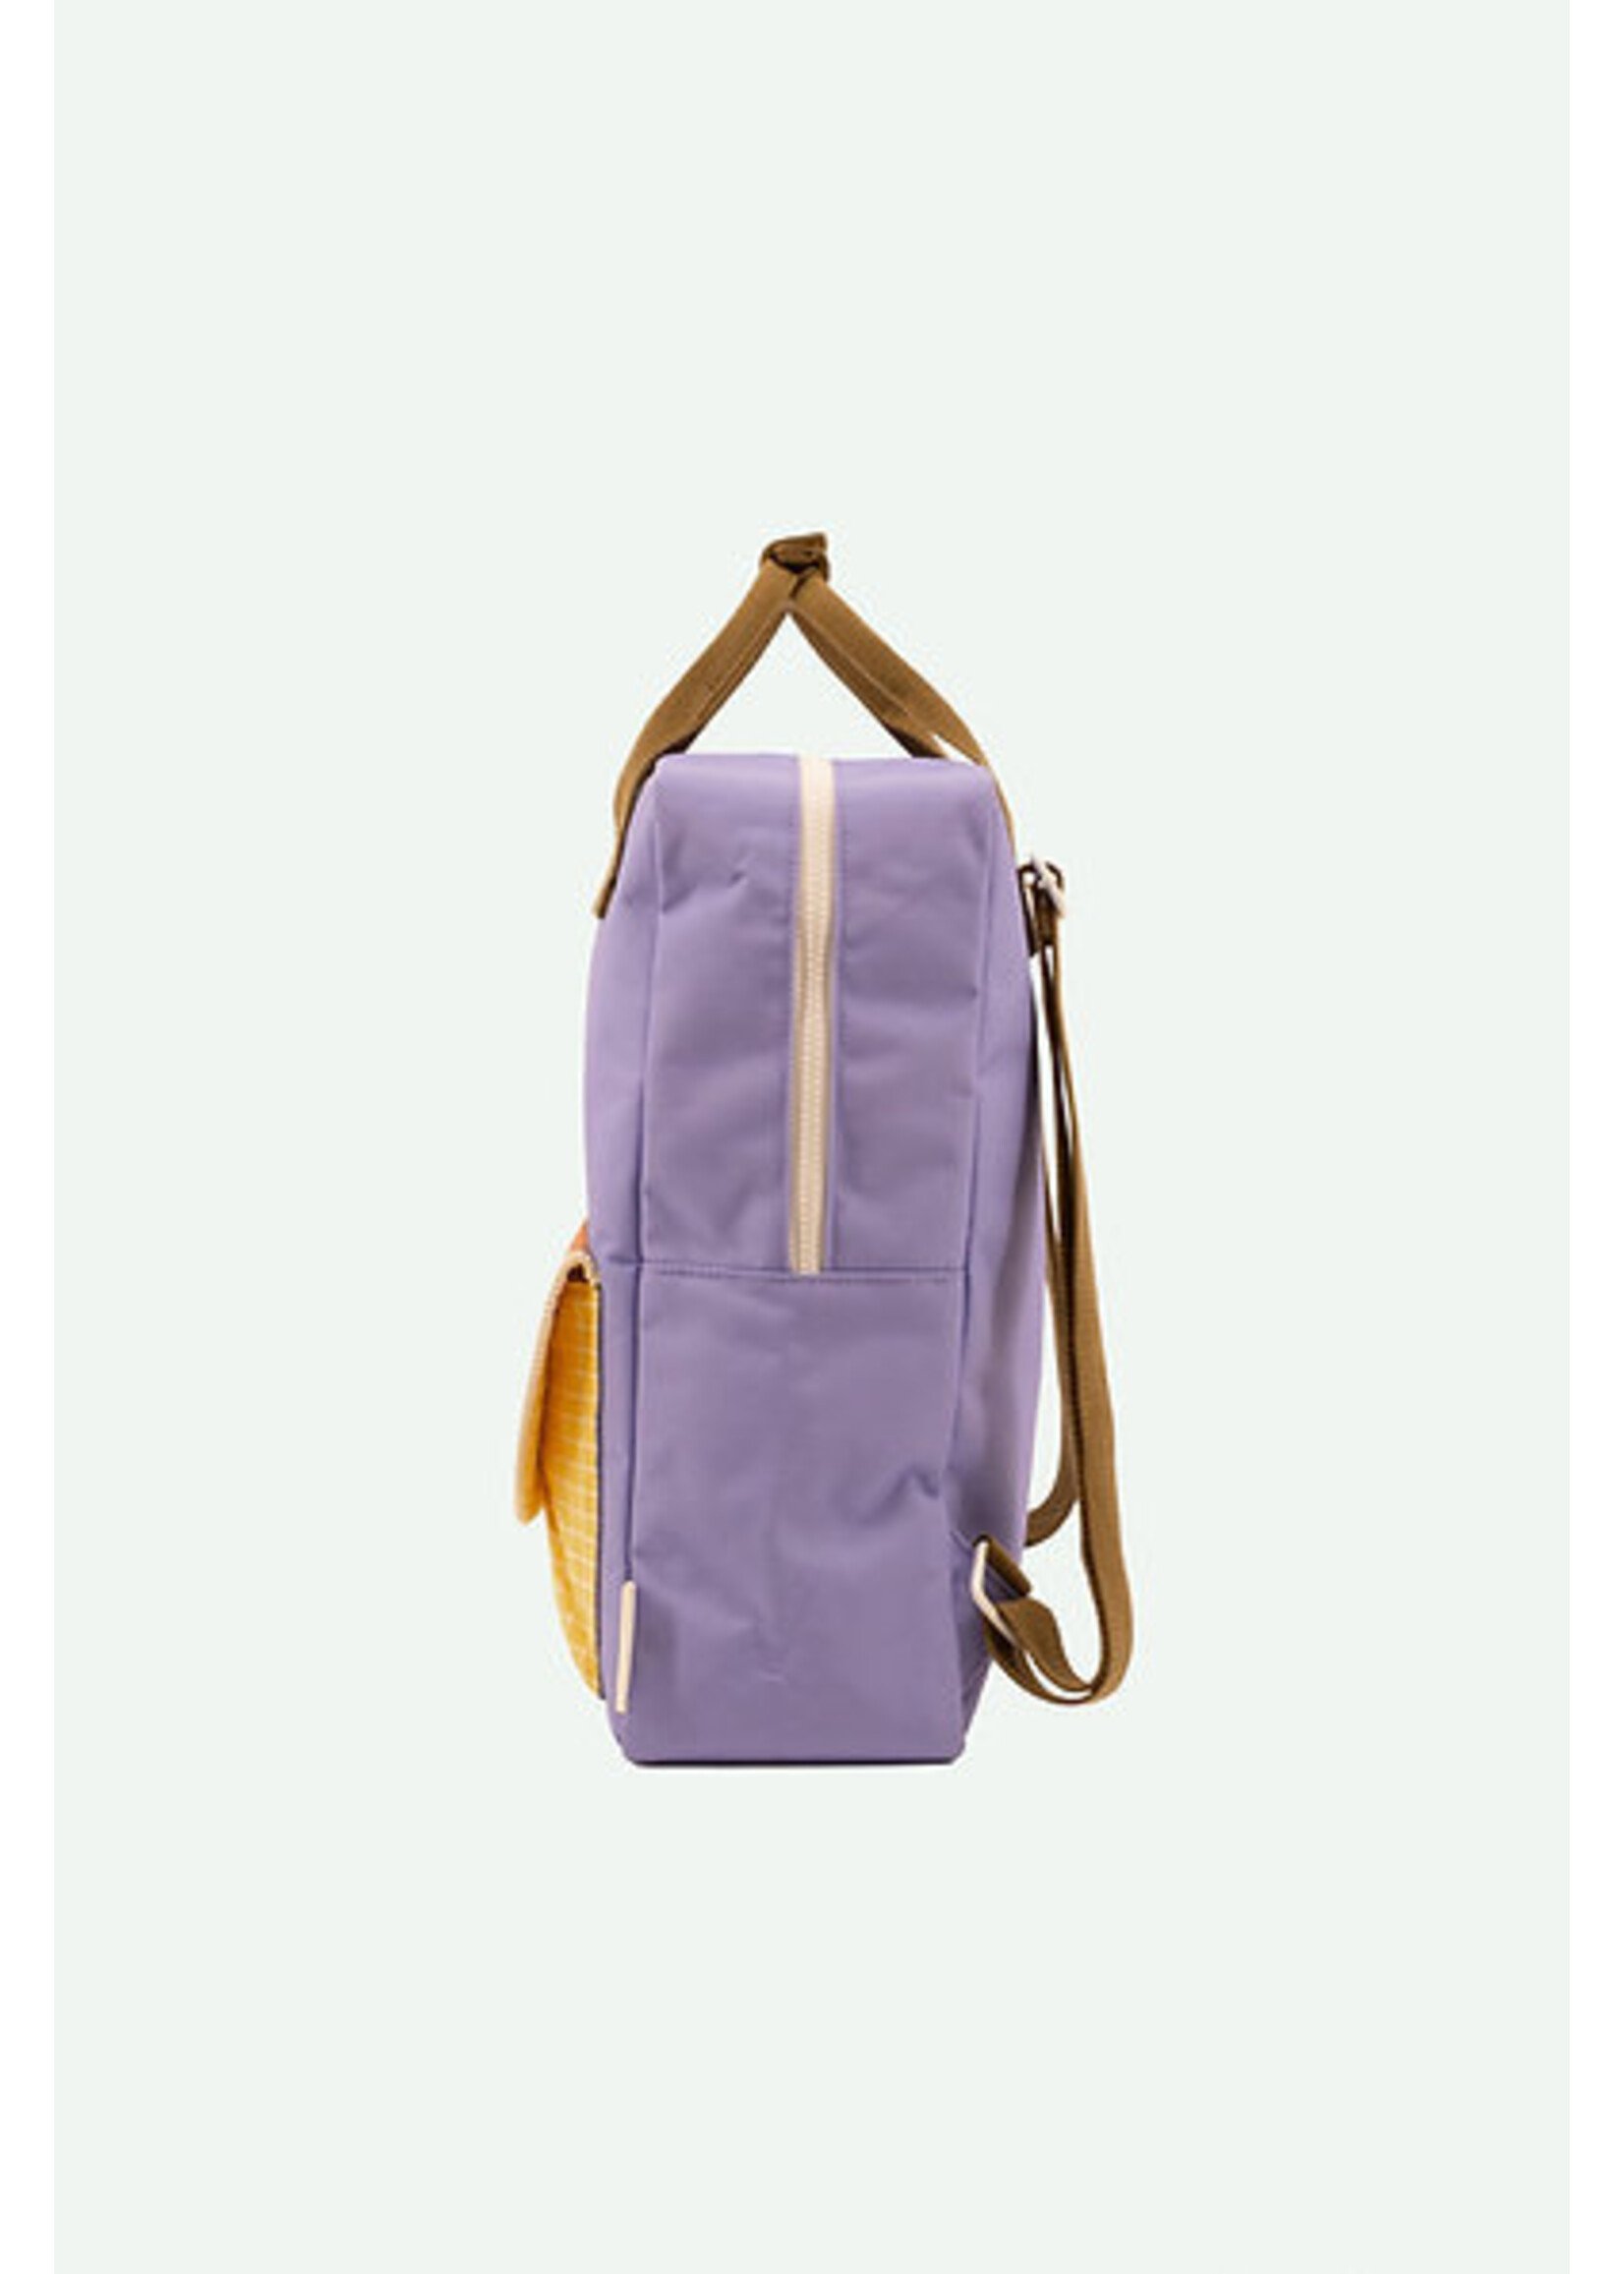 Sticky lemon Sticky Lemon Backpack Large - Blooming Purple